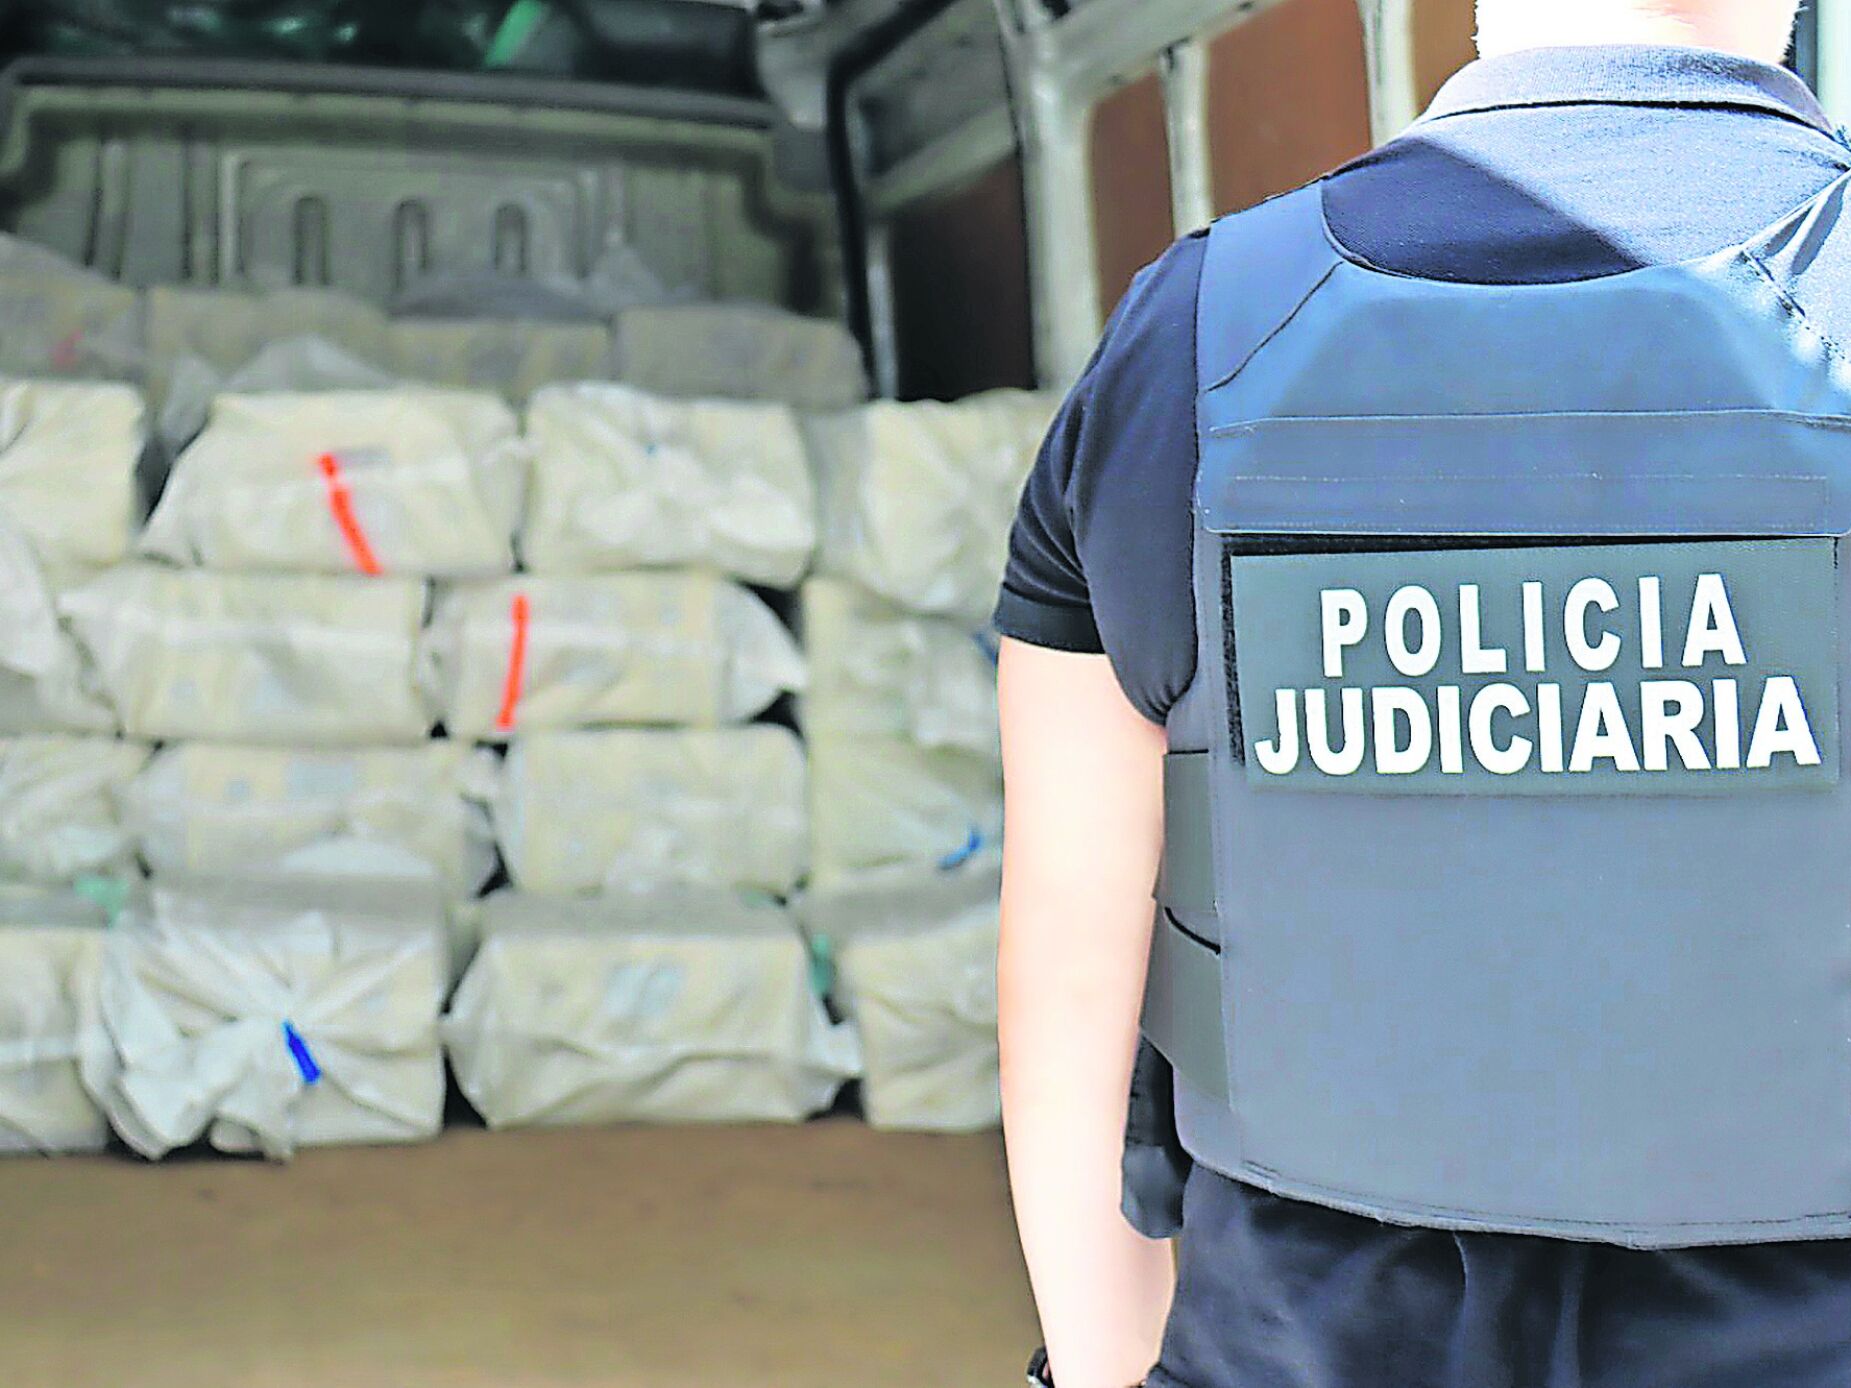 Polícias tiraram da rua 721 milhões de euros em cocaína